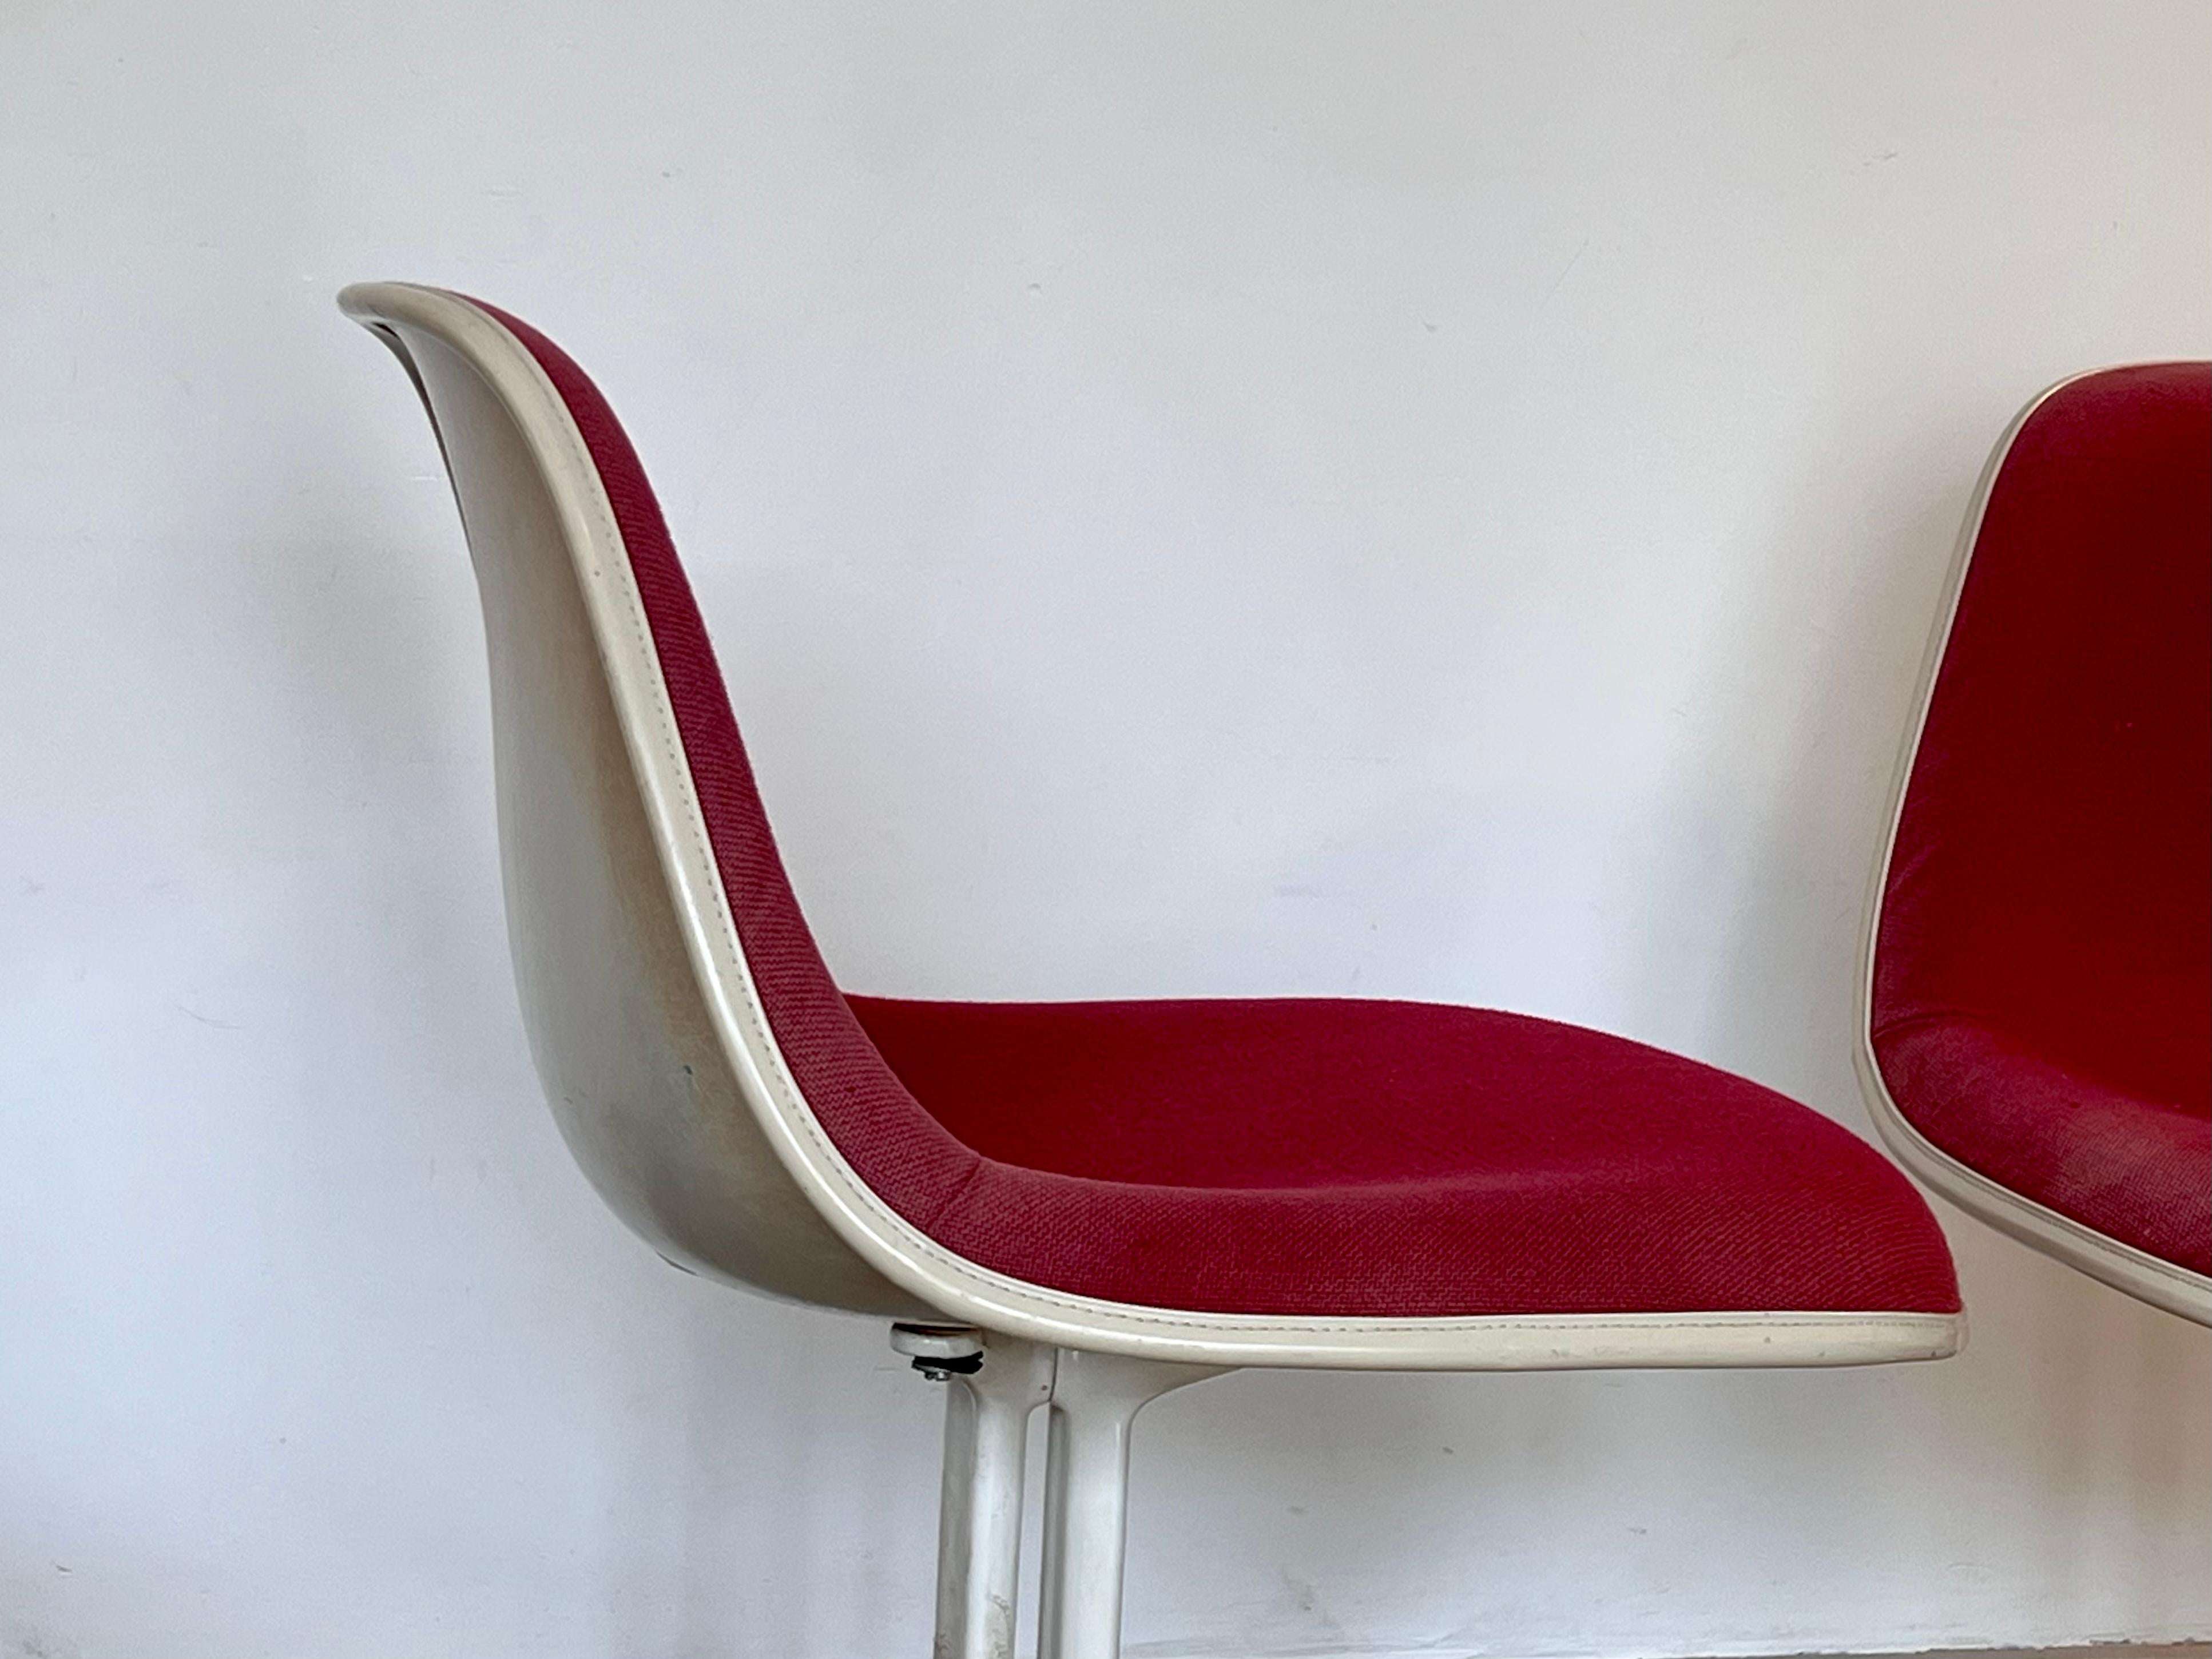 Der Stuhl La Fonda, entworfen von Charles und Ray Eames für das Restaurant La Fonda del Sol von Alexander Girard in New York, 1960er Jahre.
 Der Stuhl hat eine anmutig geschwungene Sitzfläche und ein schlankes Profil. Der Stuhl La Fonda wurde für